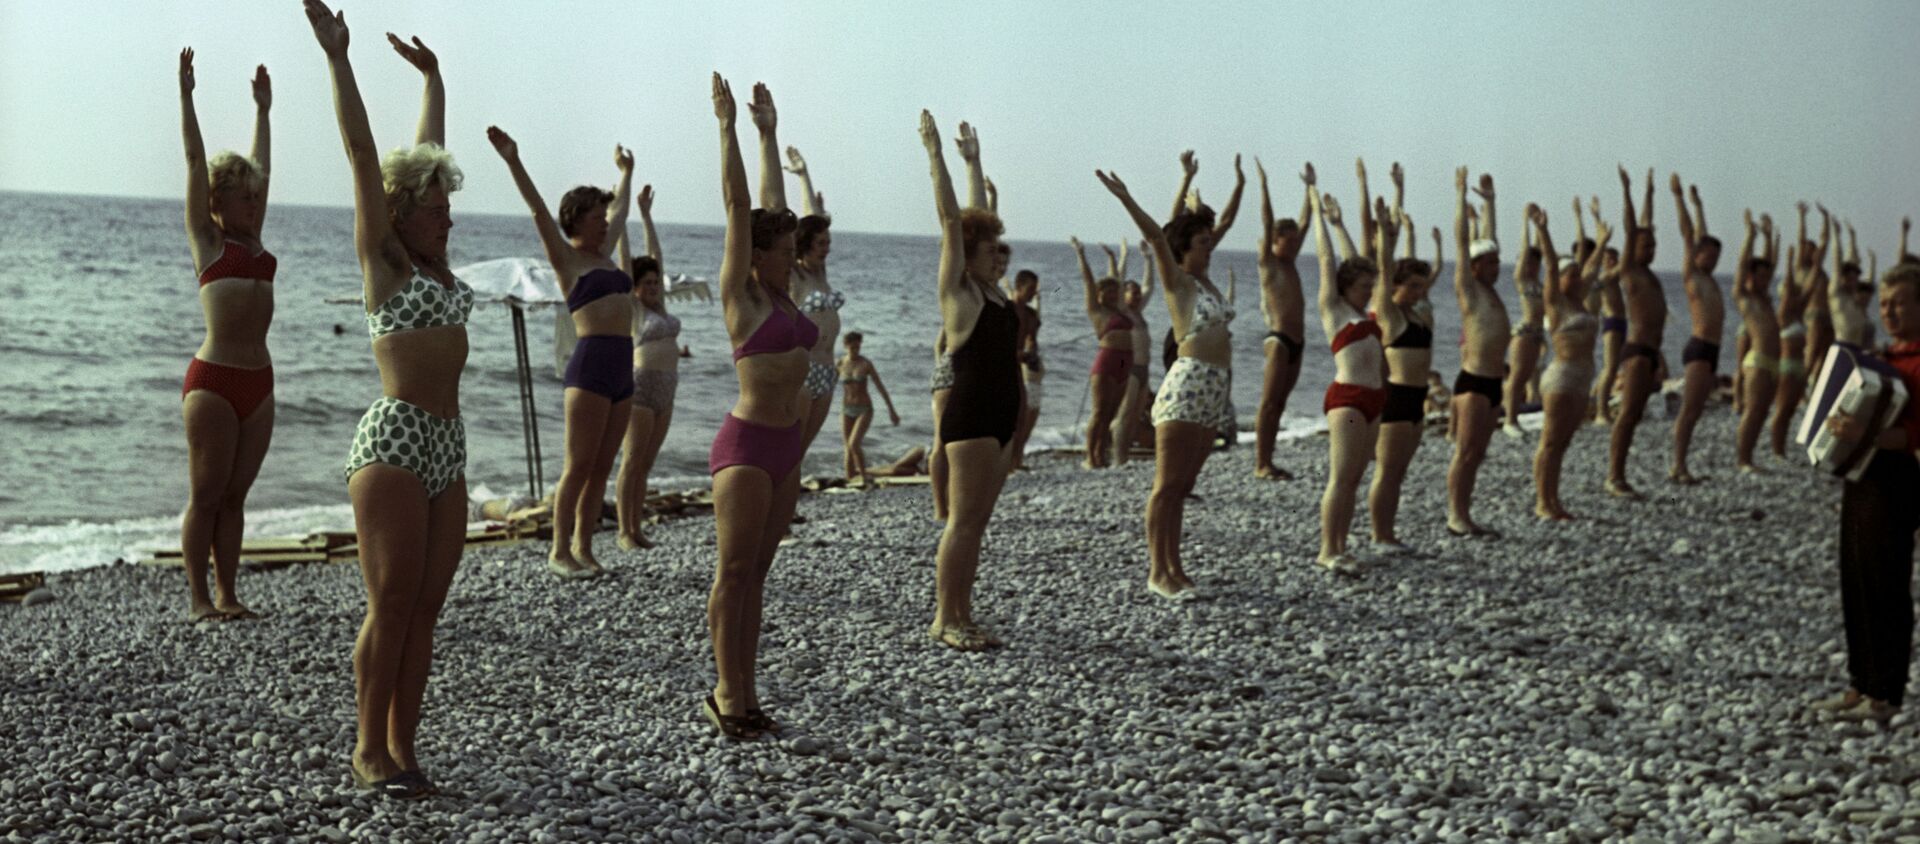 Оздоровительная гимнастика на пляже Туапсе, Краснодарский край, 1963 год - Sputnik Латвия, 1920, 25.04.2021